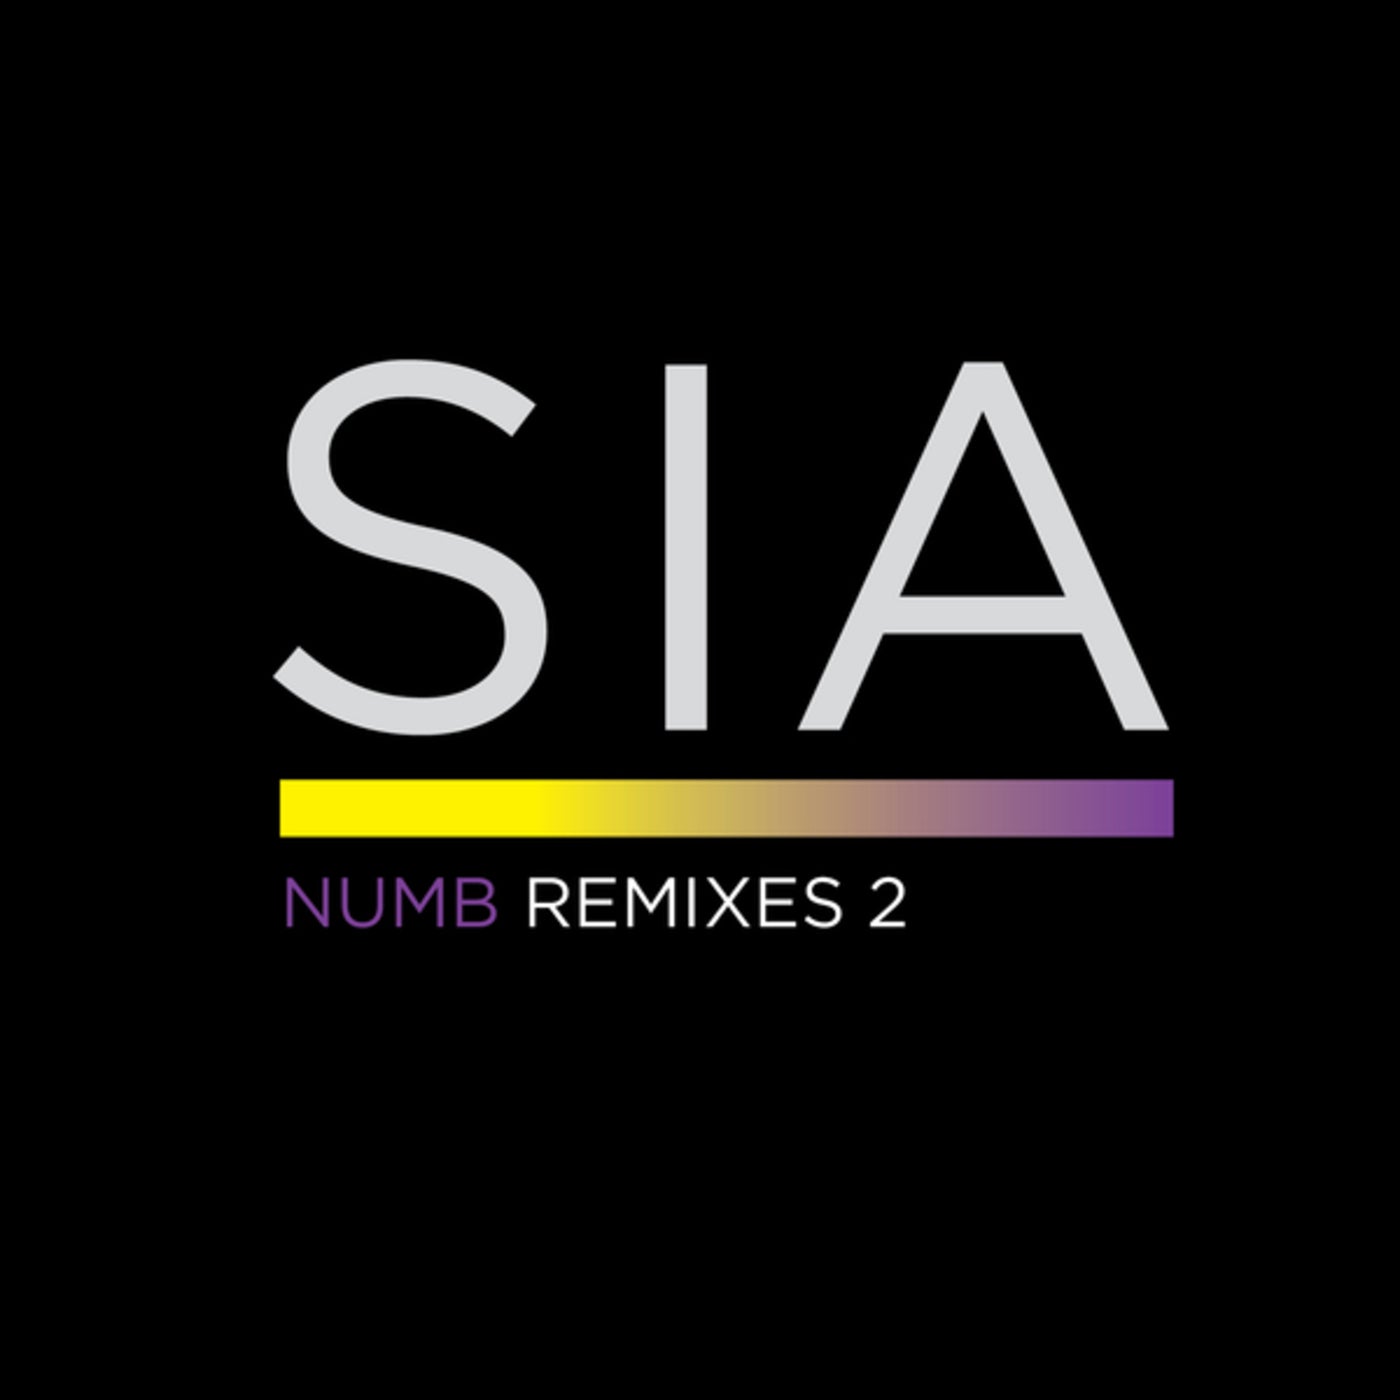 Numb Remixes 2